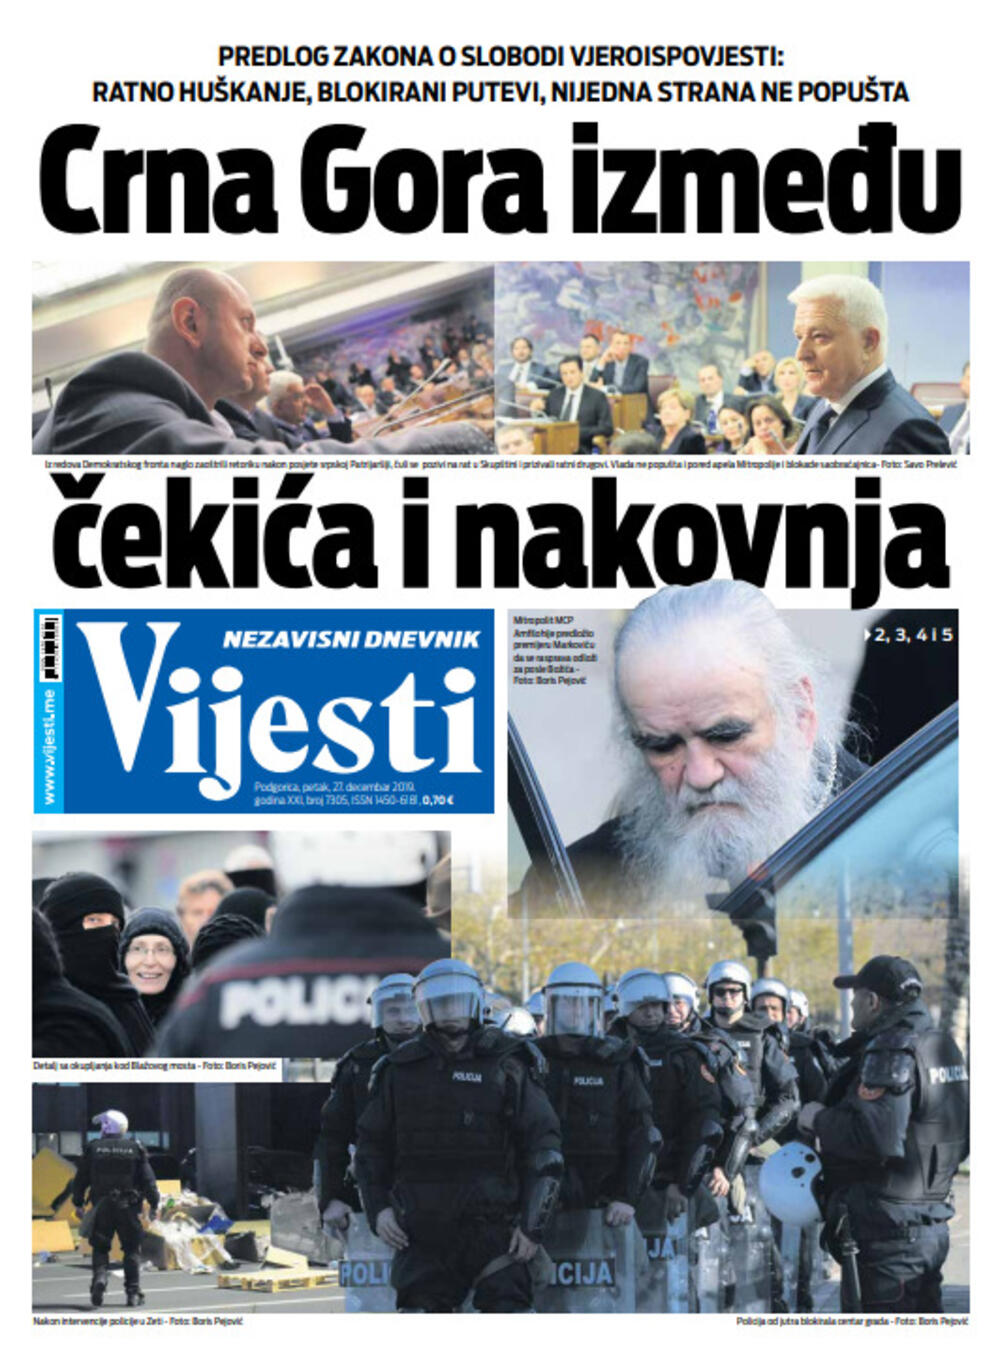 Naslovna strana "Vijesti" za 27. decembar 2019. godine, Foto: "Vijesti"